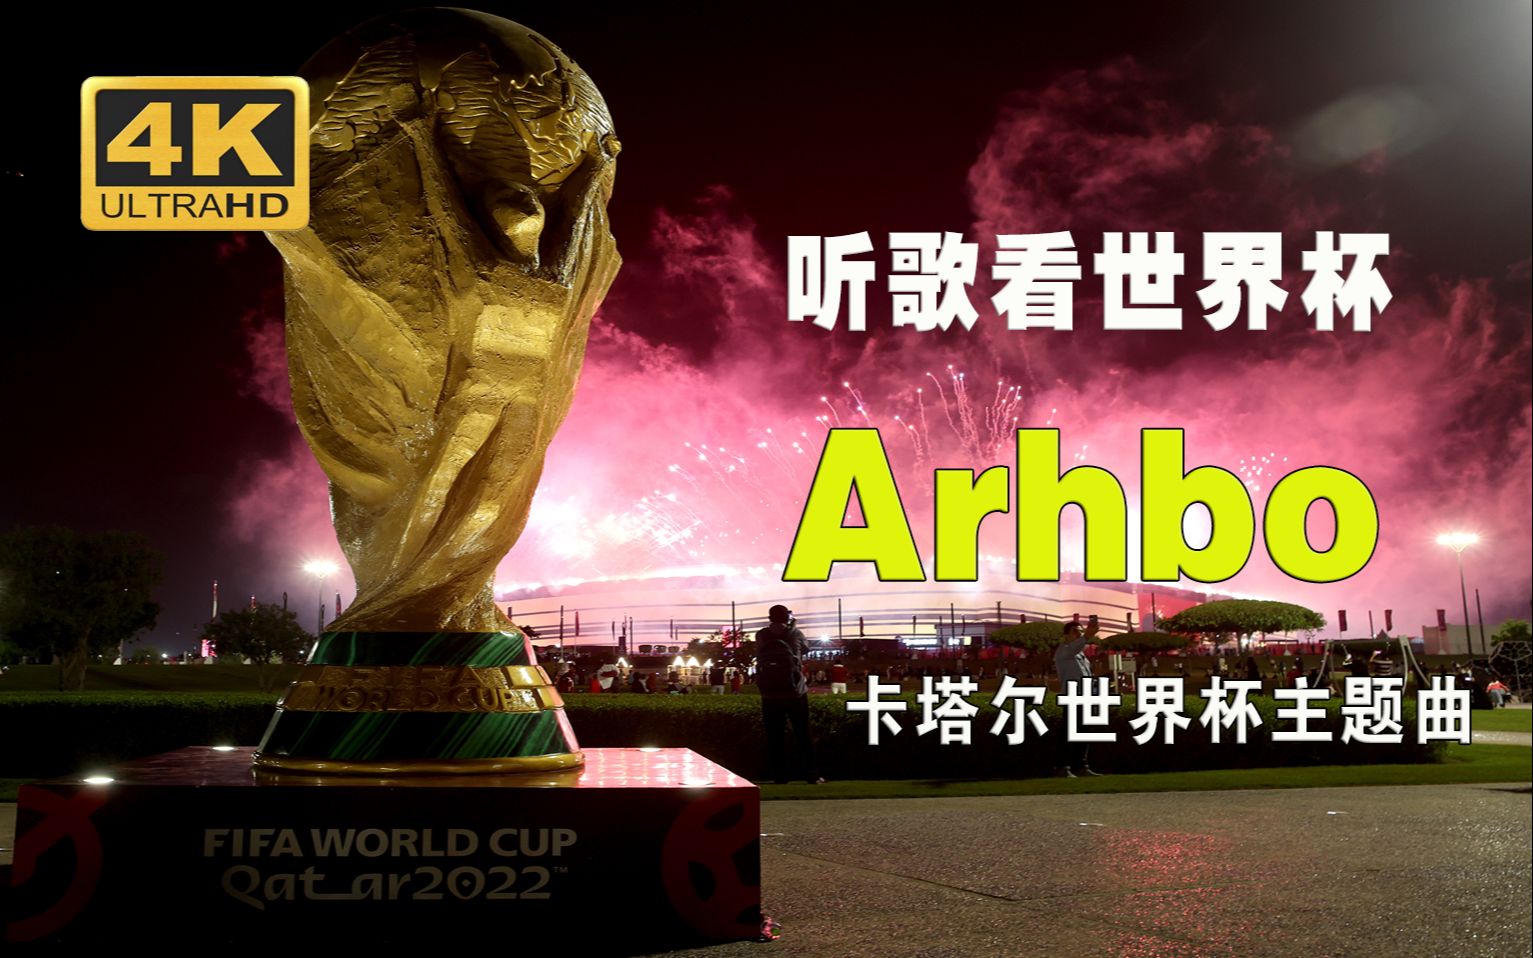 【听歌看世界杯】卡塔尔世界杯主题曲Arhbo-回忆激情的世界杯